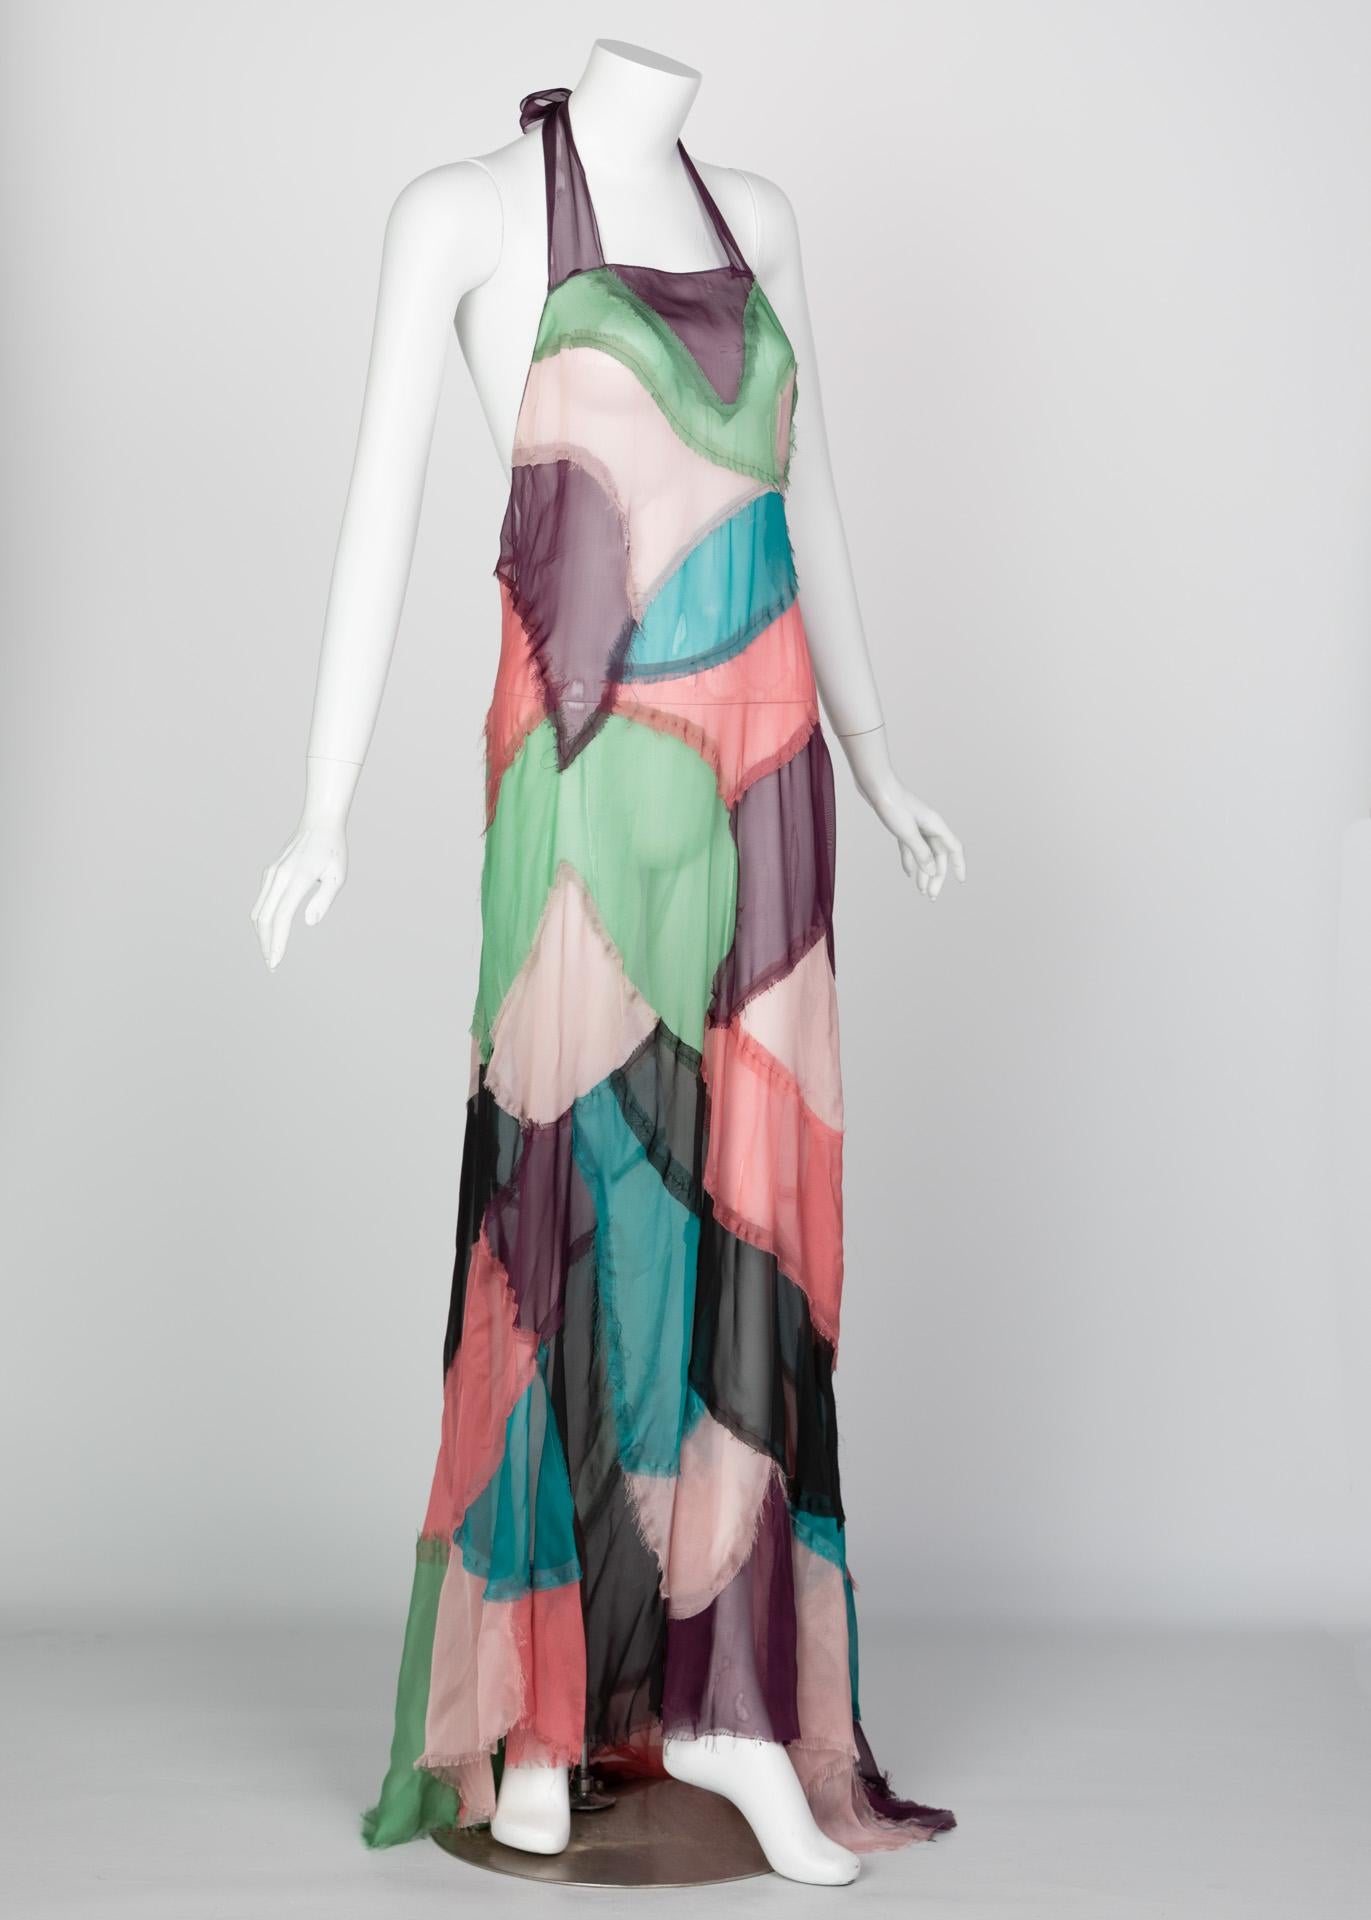 Alberta Ferretti Silk Chiffon Patchwork Open back Halter Gown, 2005 In Excellent Condition For Sale In Boca Raton, FL